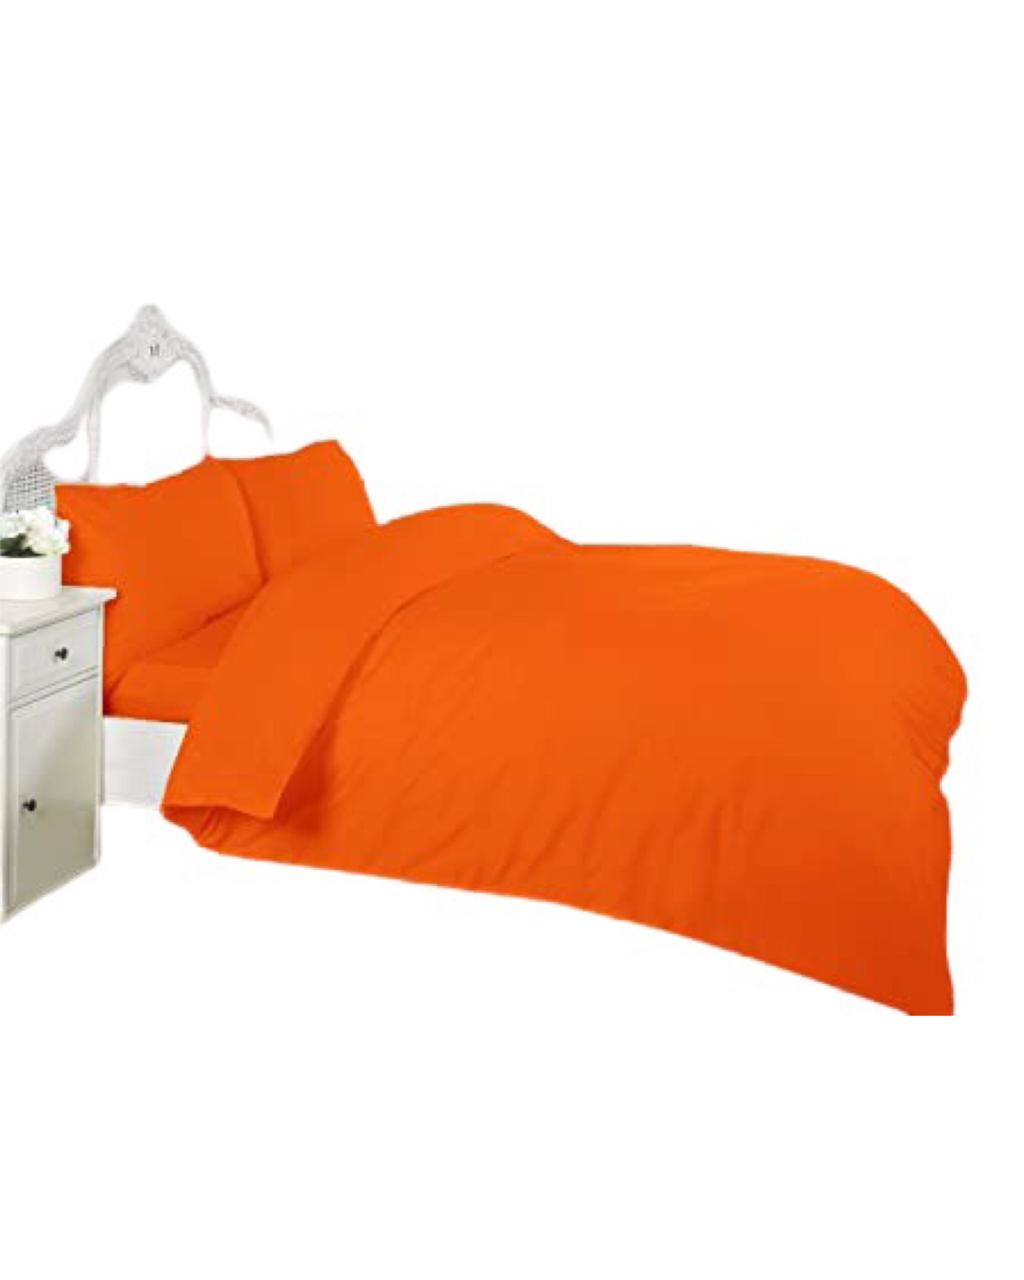 Double Duvet Cover Set - Plain Color orange